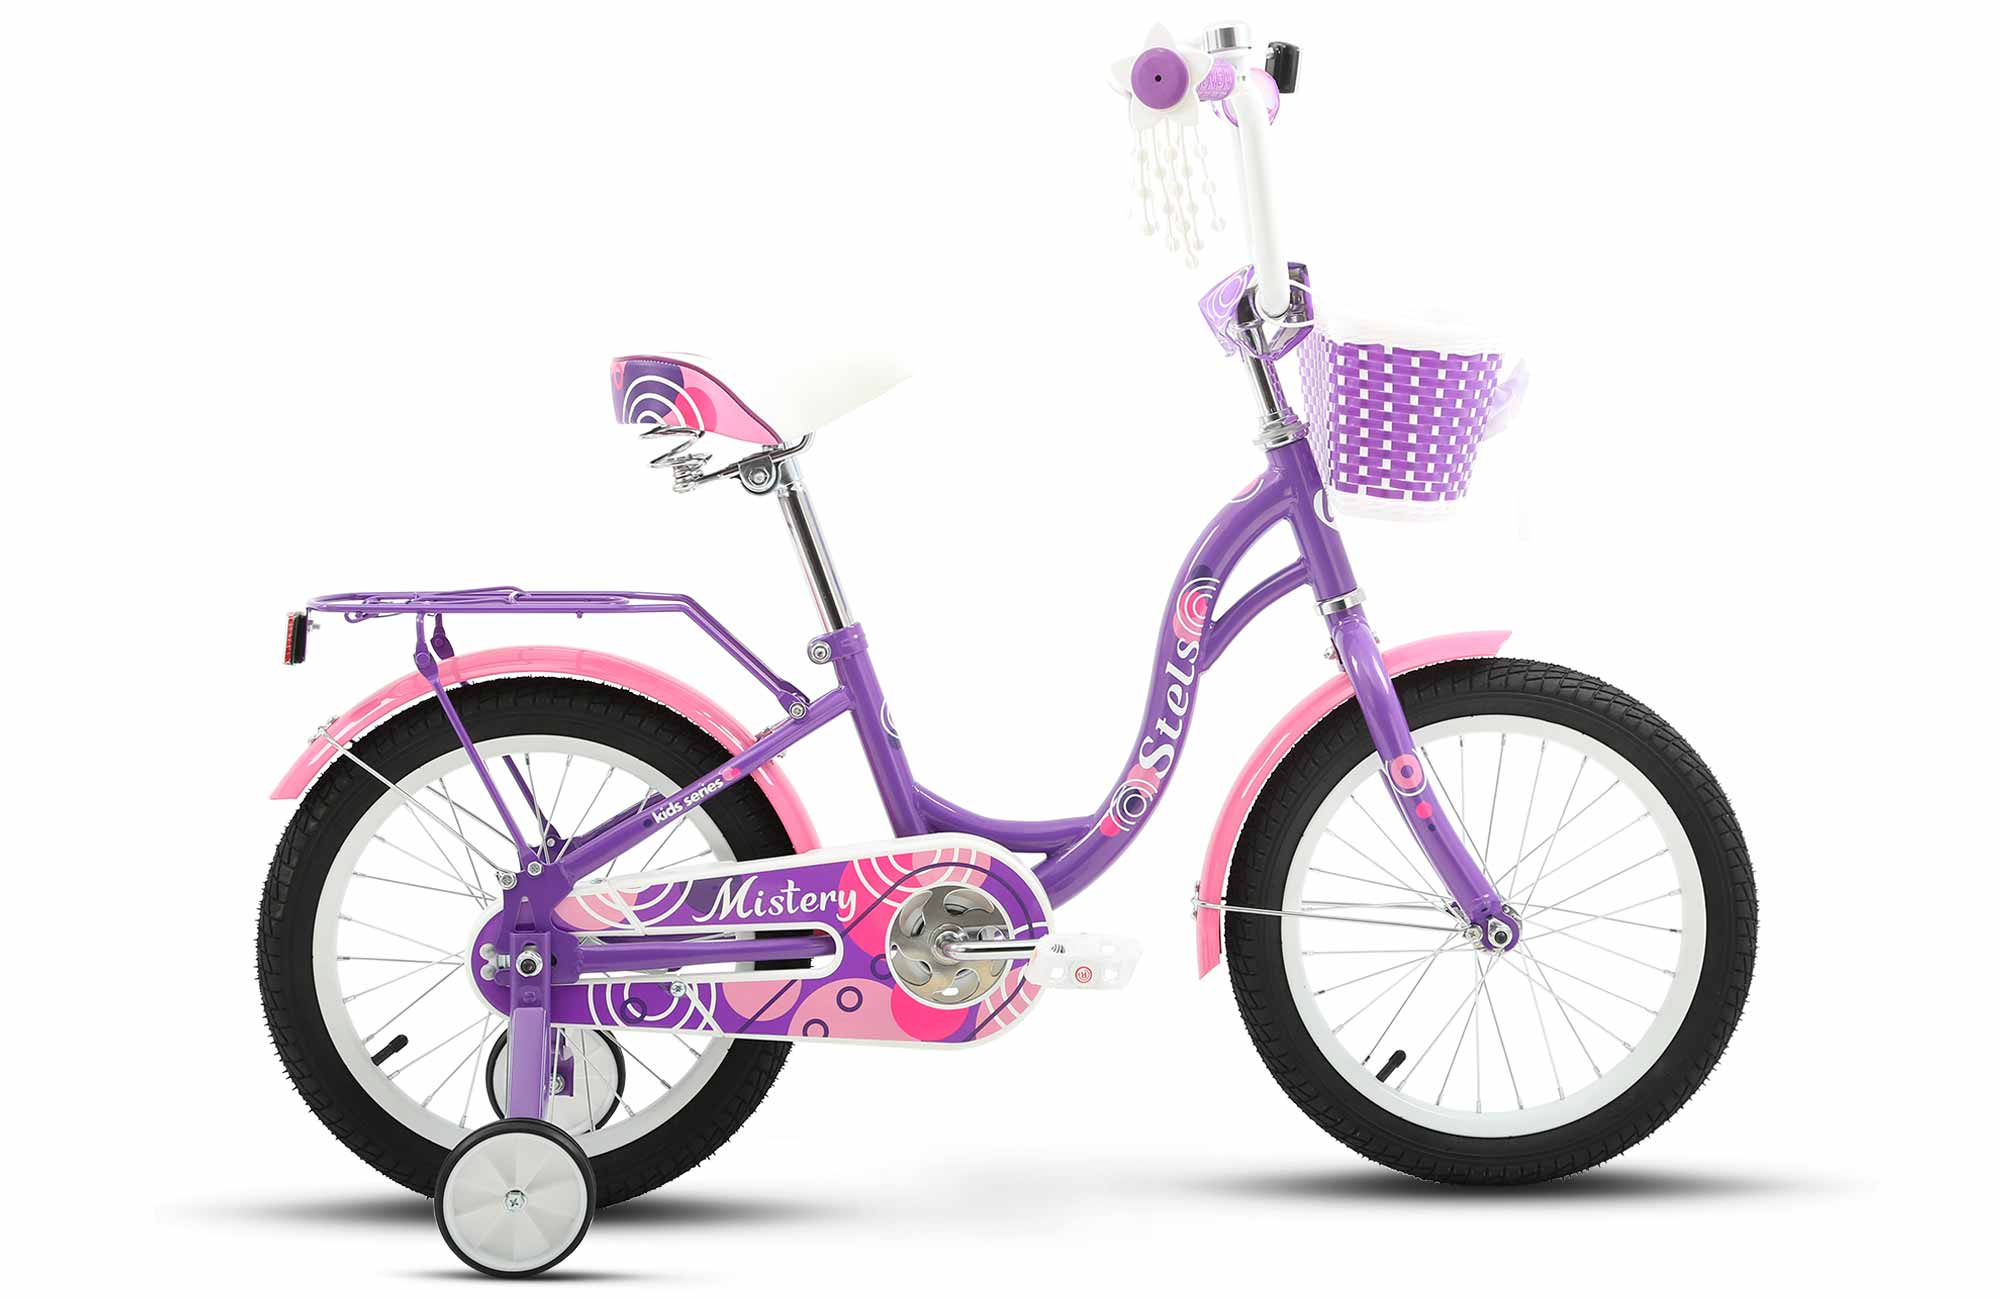 Детский велосипед STELS Mistery C 16 Z010 9.6 Фиолетовый детский пантенол скорая помощь спрей при ожогах 130 г